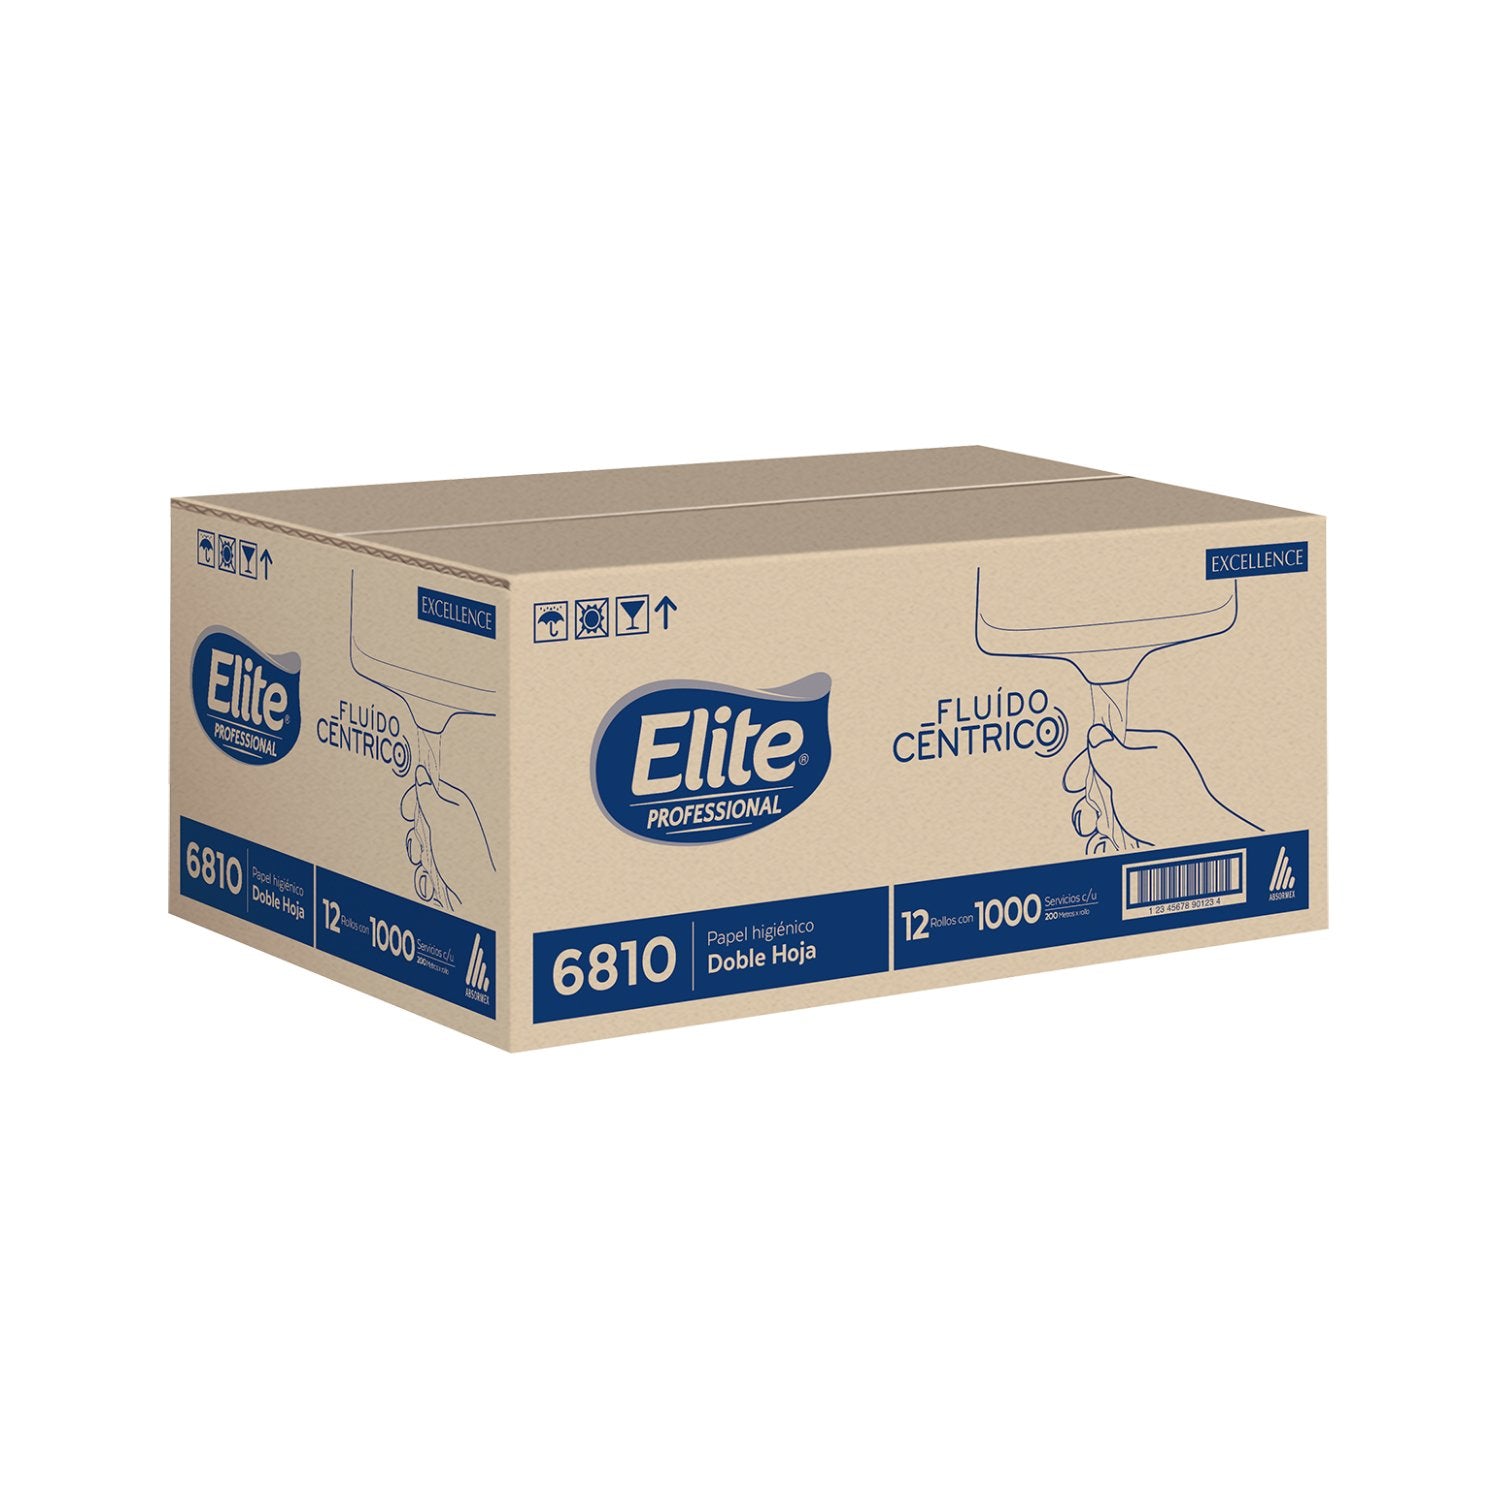 Elite® Higiénico Excellence Fluido Céntrico (6810) - Karlan ¡Marca la Limpieza!AB50336810